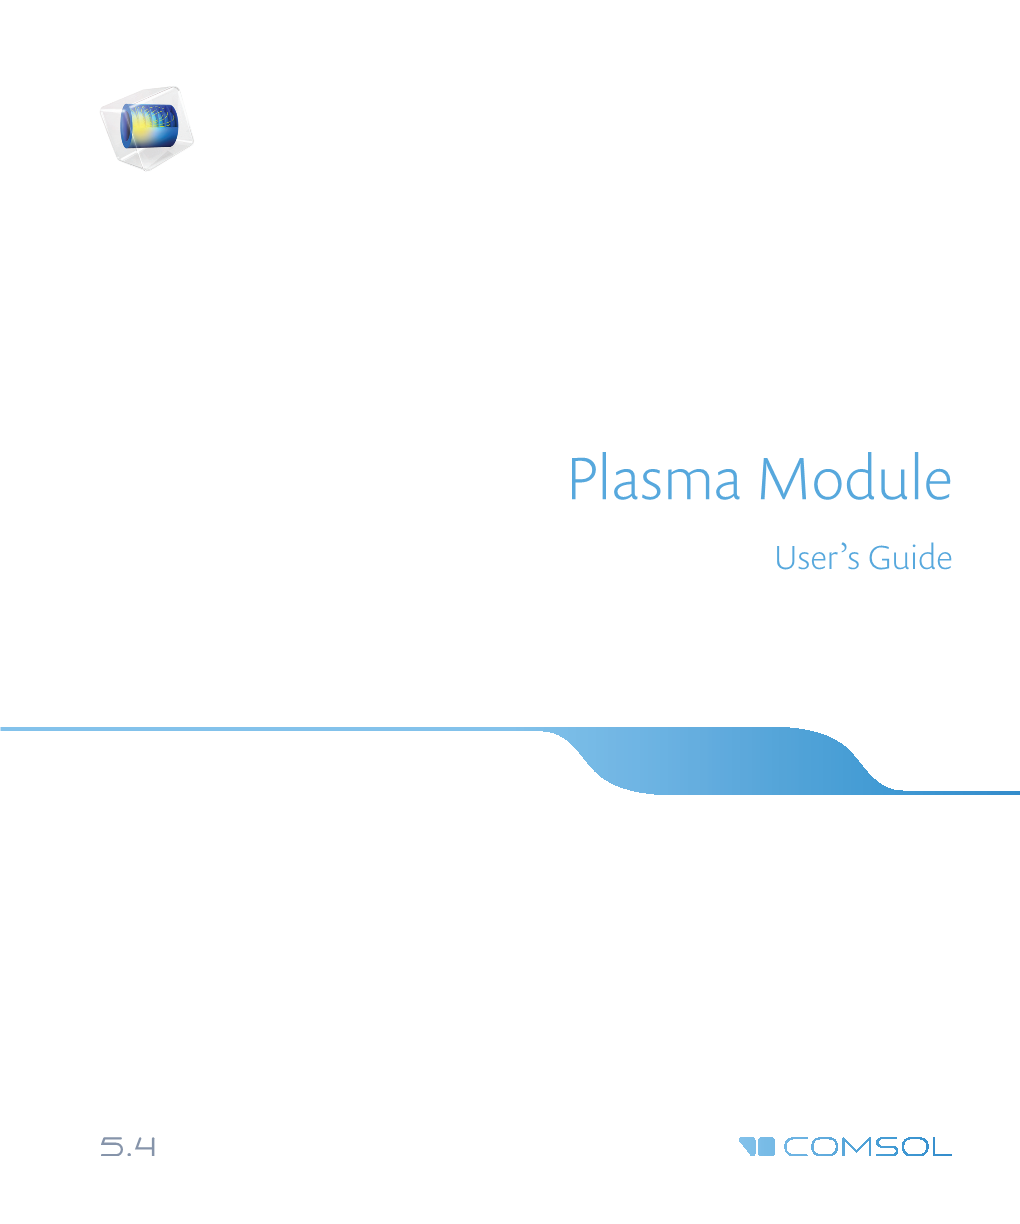 The Plasma Module User's Guide